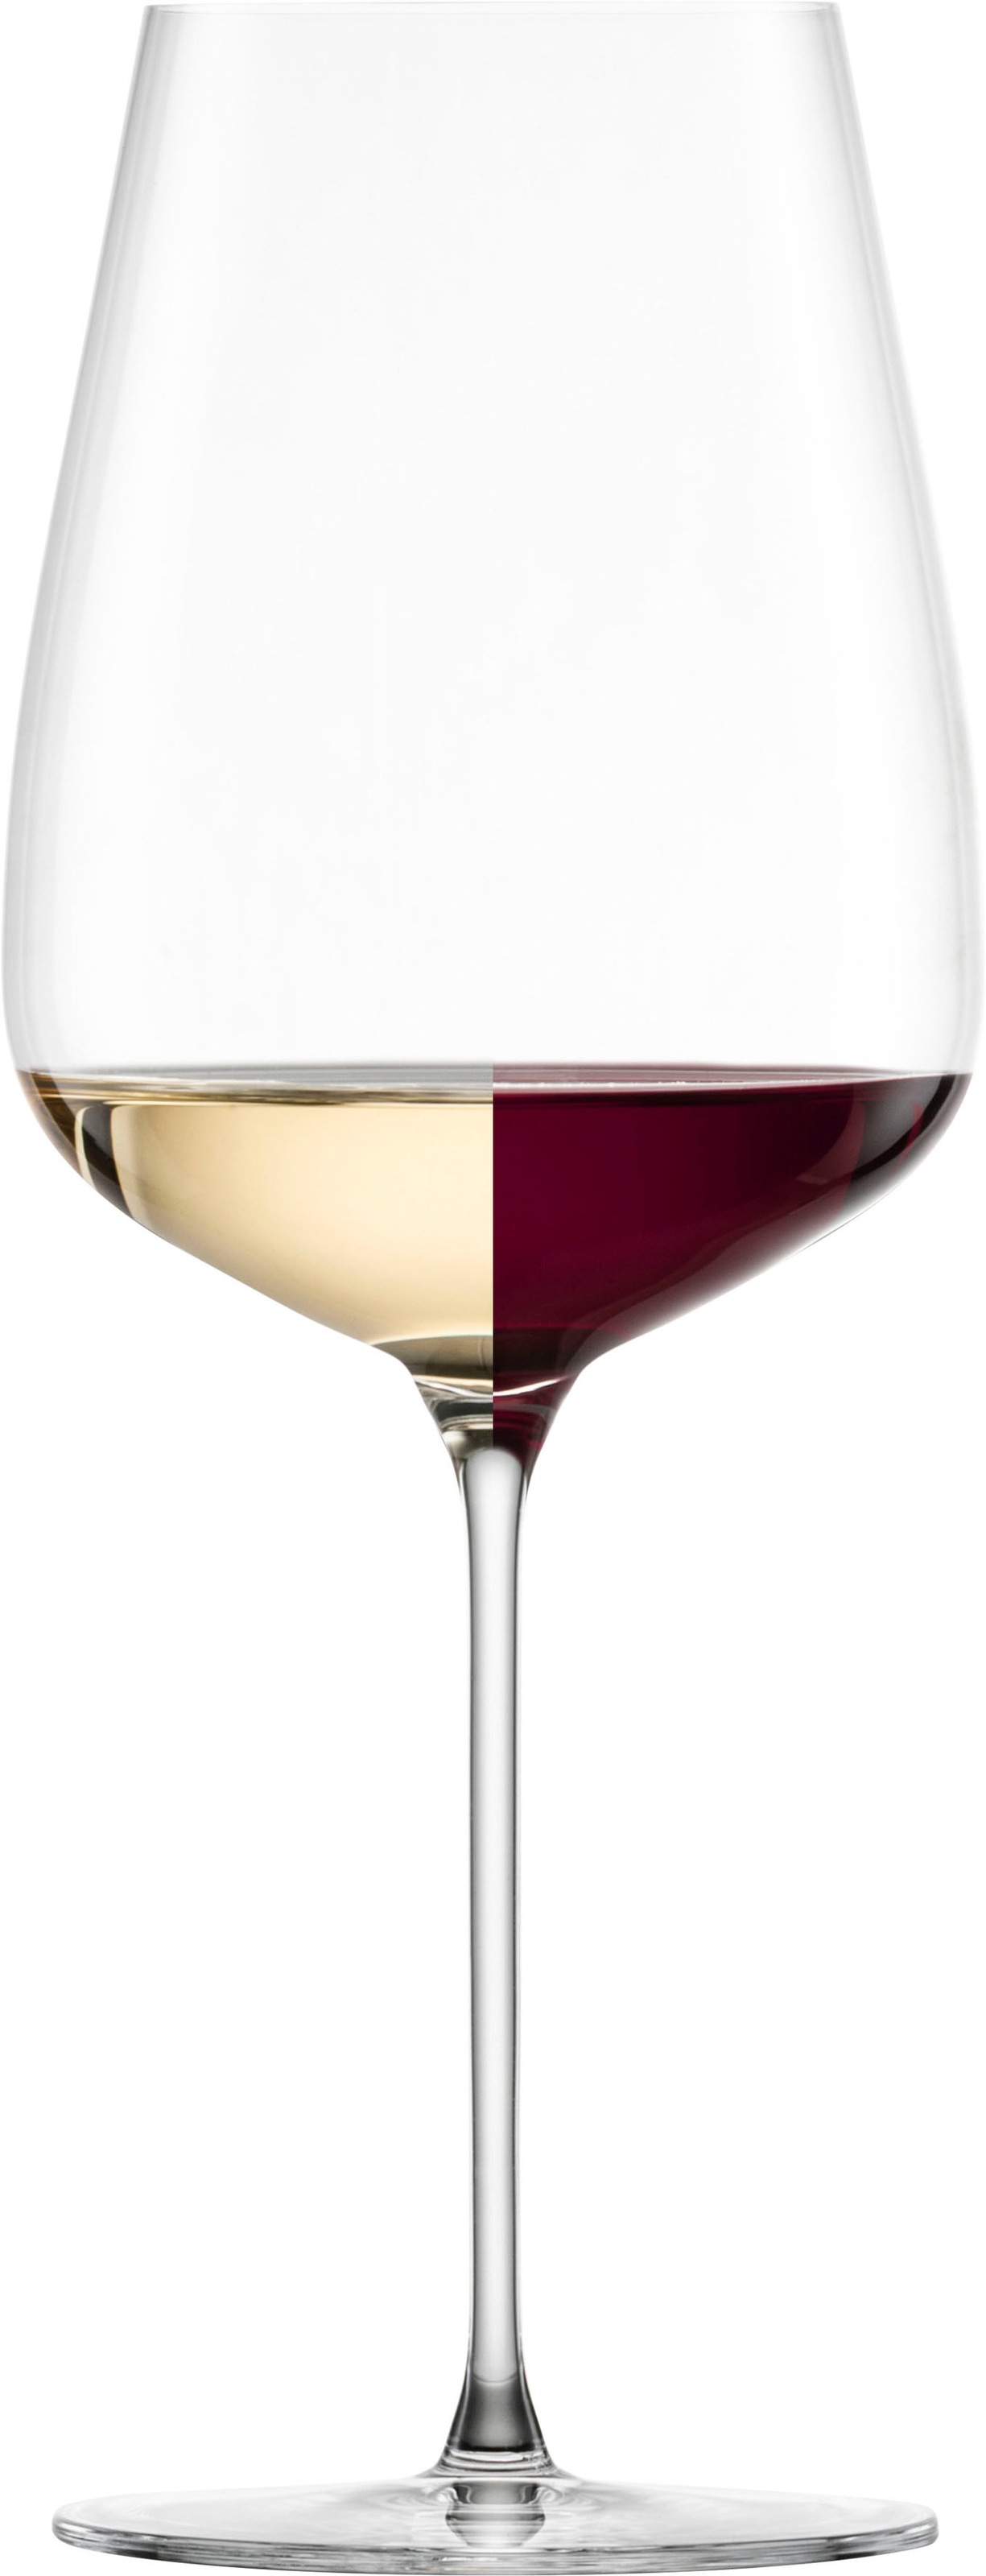 Eisch Rotweinglas »ESSENCA SENSISPLUS«, (Set, 2 tlg., 2 Gläser im Geschenkkarton), Allroundglas, 2-teilig, 740 ml, Made in Germany